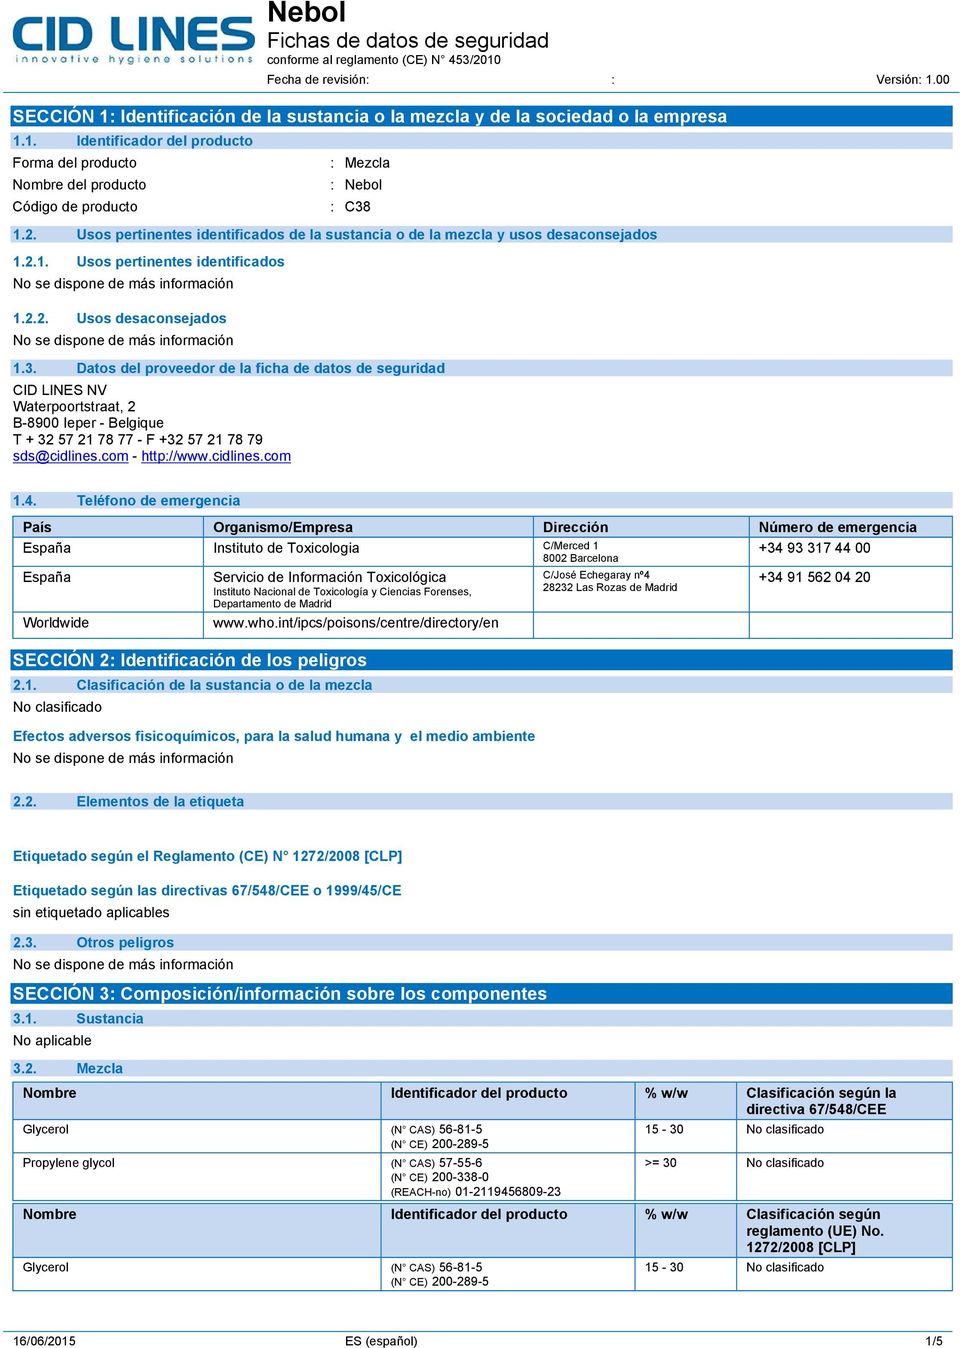 Datos del proveedor de la ficha de datos de seguridad CID LINES NV Waterpoortstraat, 2 B-8900 Ieper - Belgique T + 32 57 21 78 77 - F +32 57 21 78 79 sds@cidlines.com - http://www.cidlines.com 1.4.